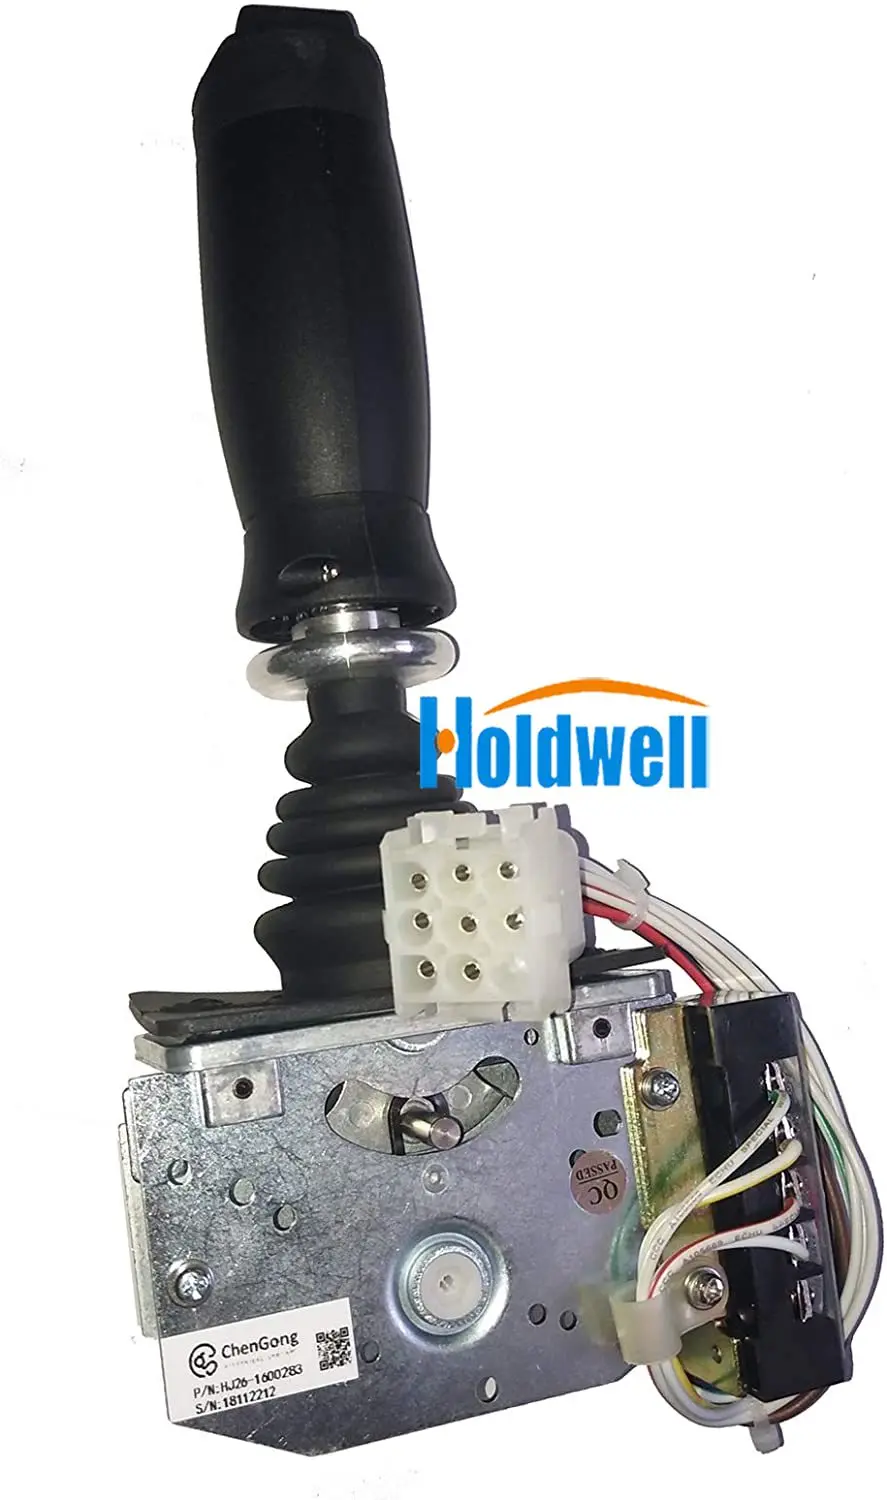 Holdwell Ovládač Radiča 1600283 pre JLG 400S 460SJ 600A 600AJ 600S 600SJ 660SJ 601S 740AJ 800A 800AJ